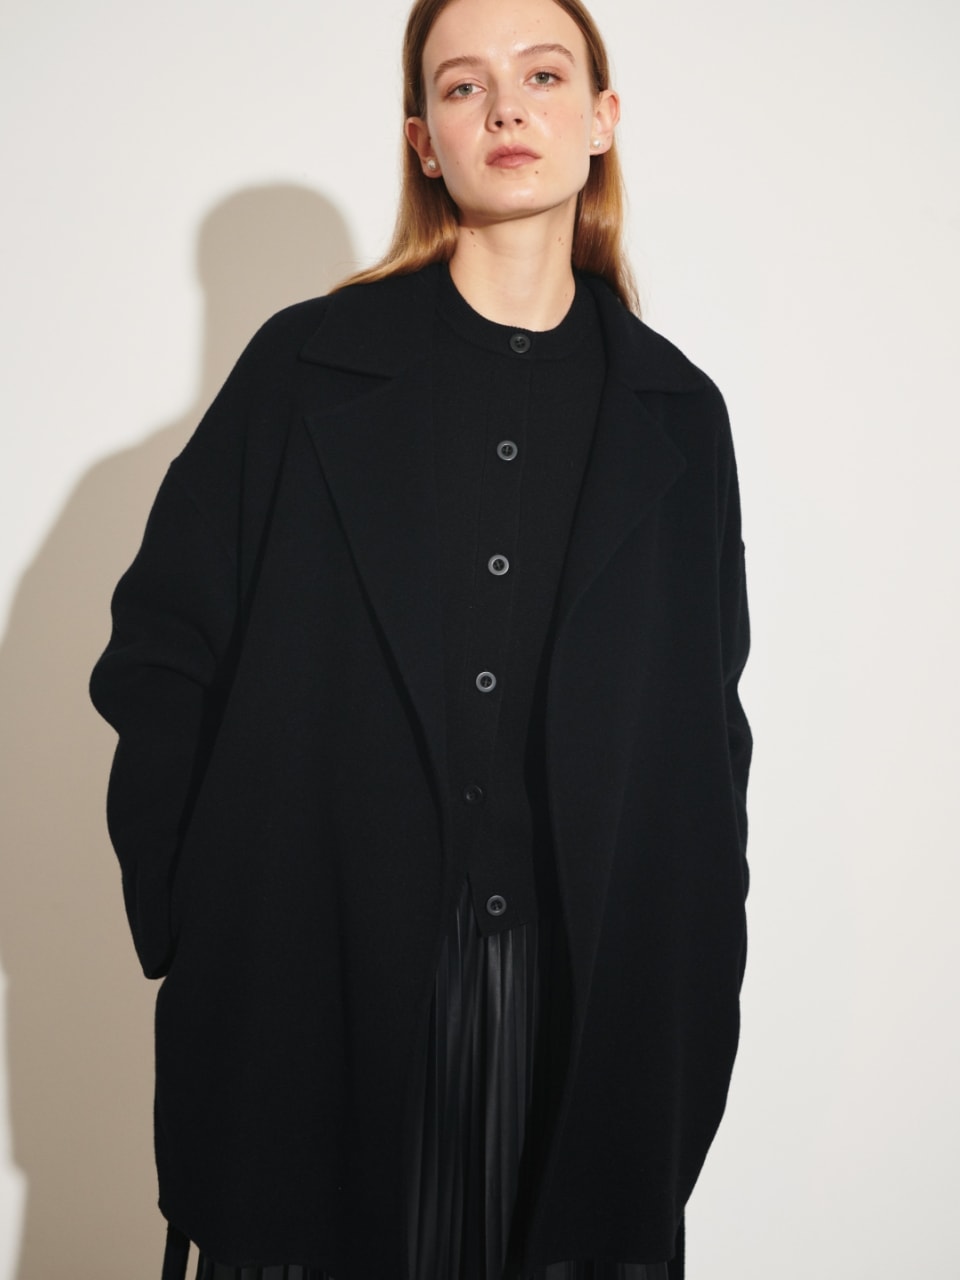 ベルテッドミドル丈リバーコート（ブラック）を着用した女性の上半身の写真